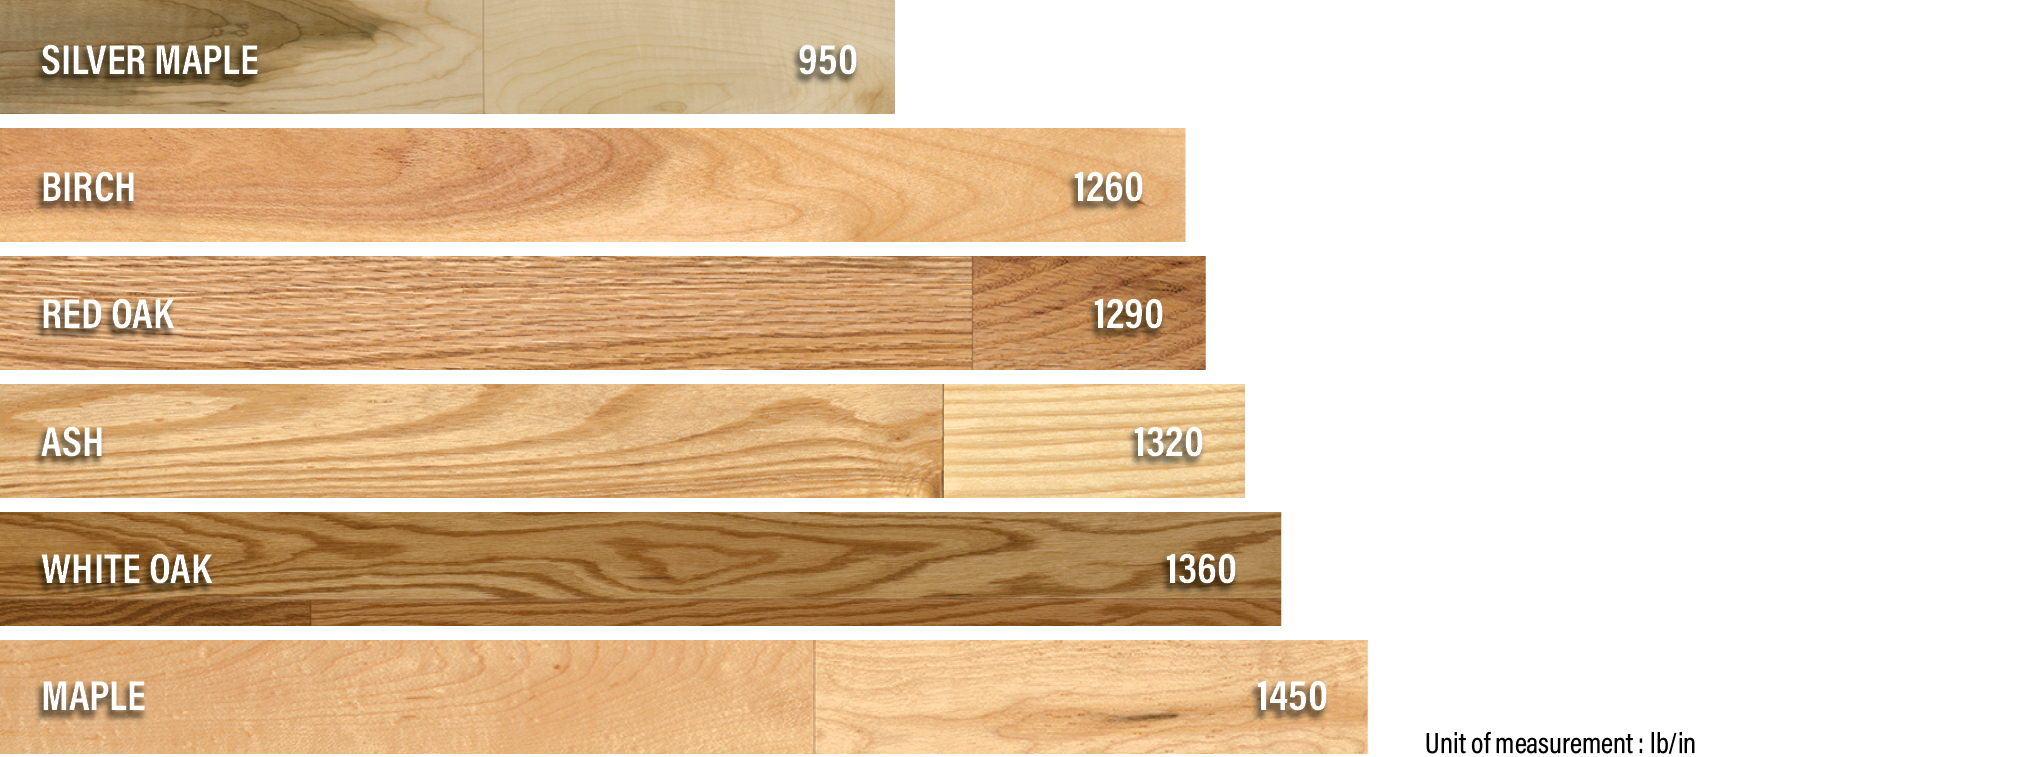 Wood Species | Janka Test | PG Flooring